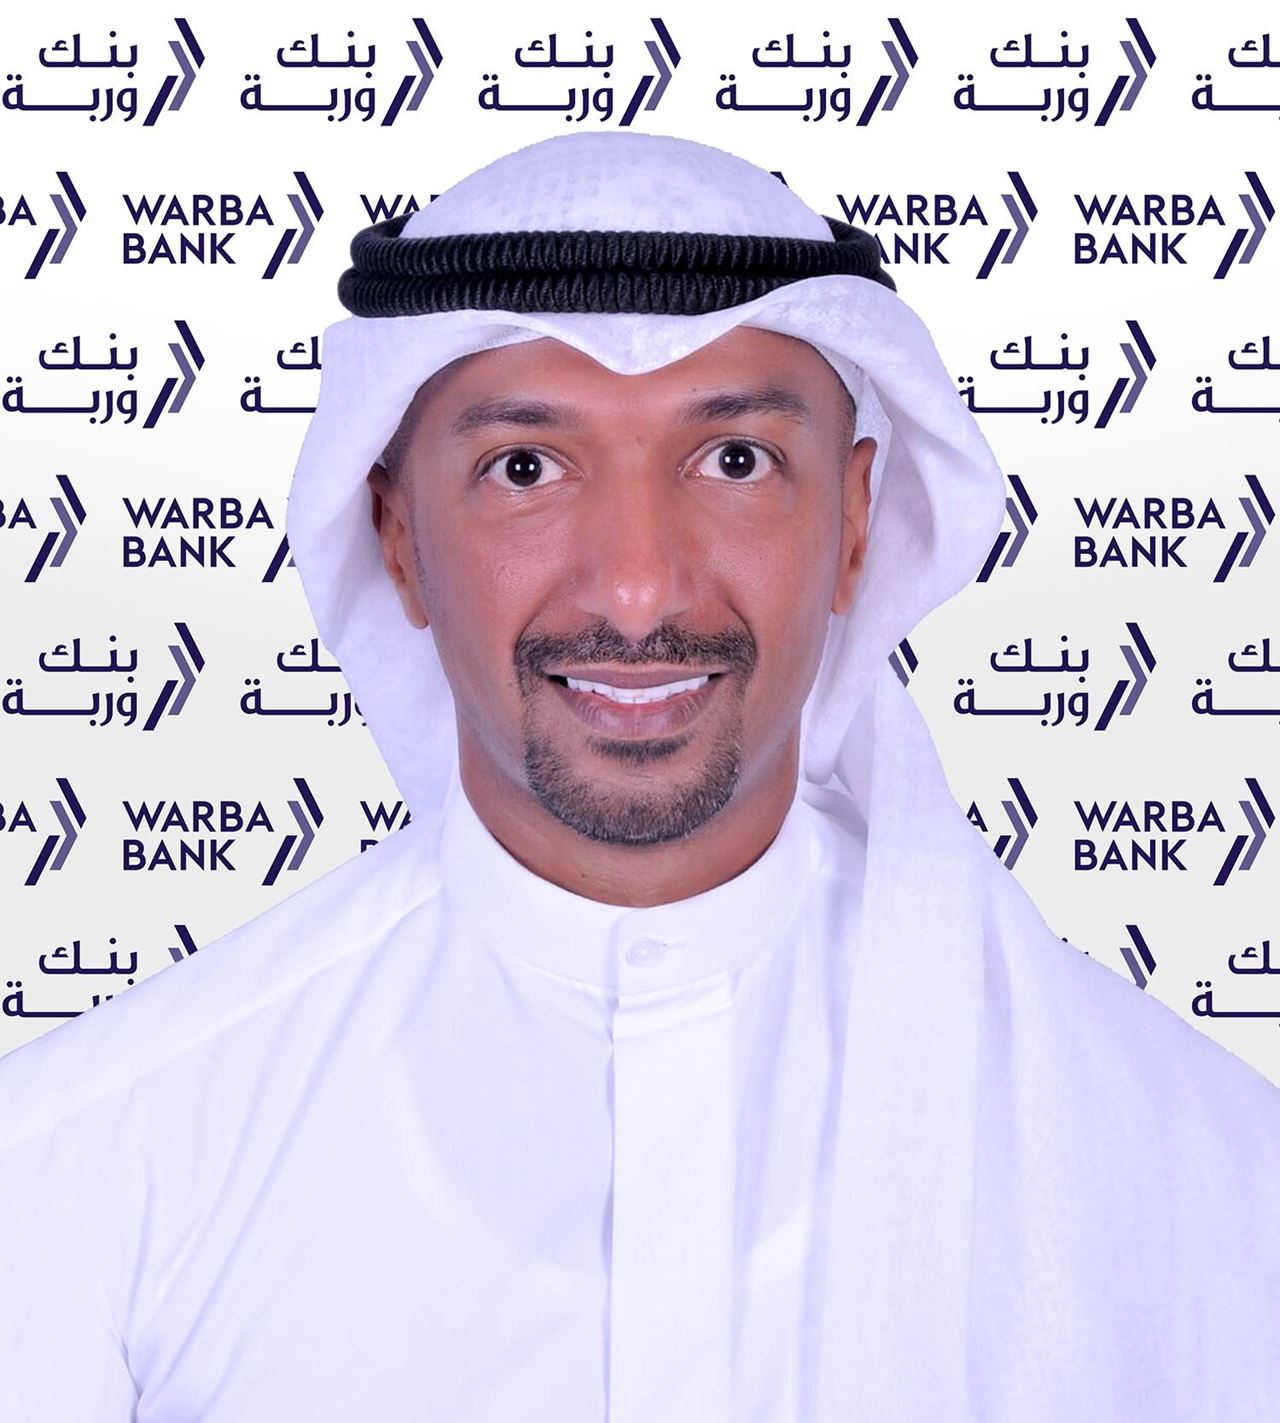  السيد عبدالله ناصر الشعيل، مدير إدارة أول – إدارة الفروع في بنك وربة